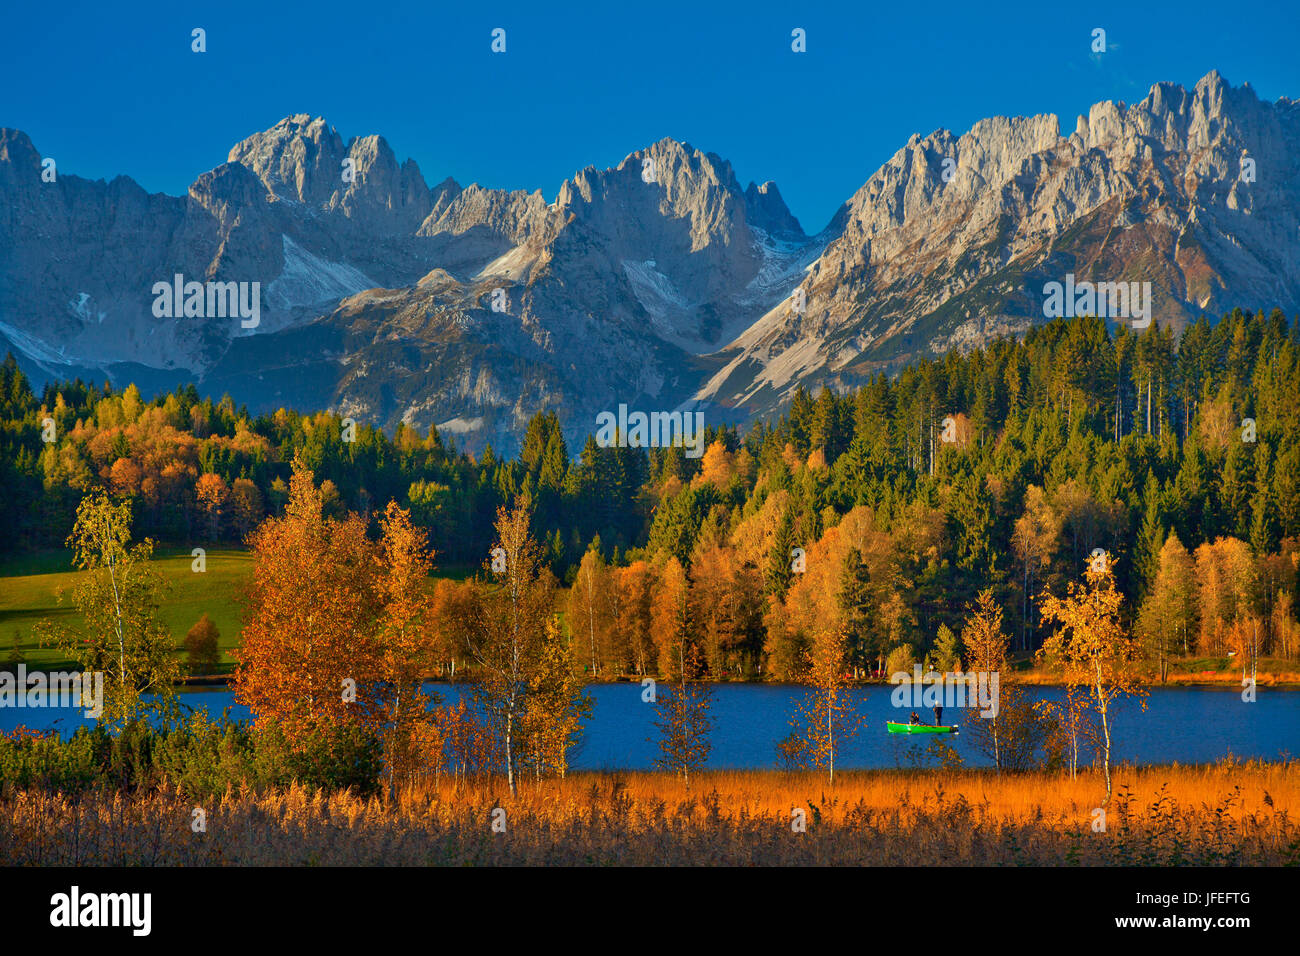 Austria, Tyrol, Kitzbuehel, black lake against wild emperor, autumn, Stock Photo